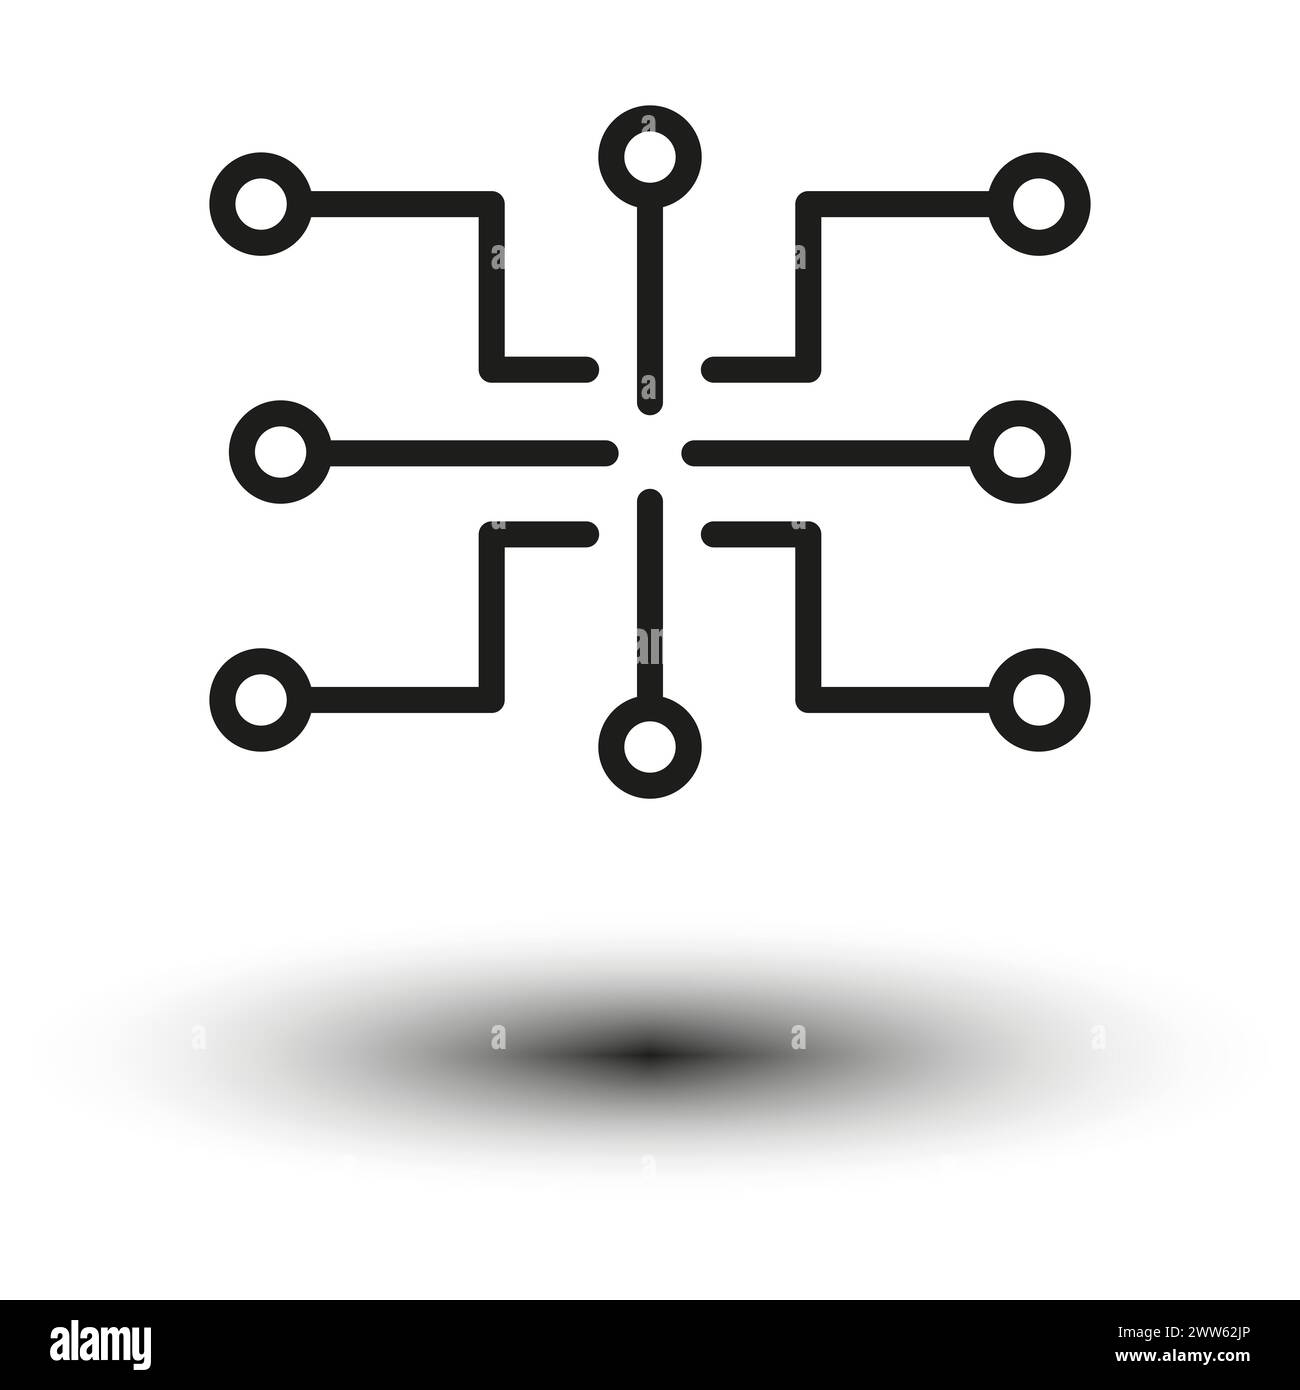 Icône symétrique ressemblant à un circuit numérique ou à une micropuce, avec des lignes et des points de connexion. Illustration vectorielle. SPE 10. Illustration de Vecteur